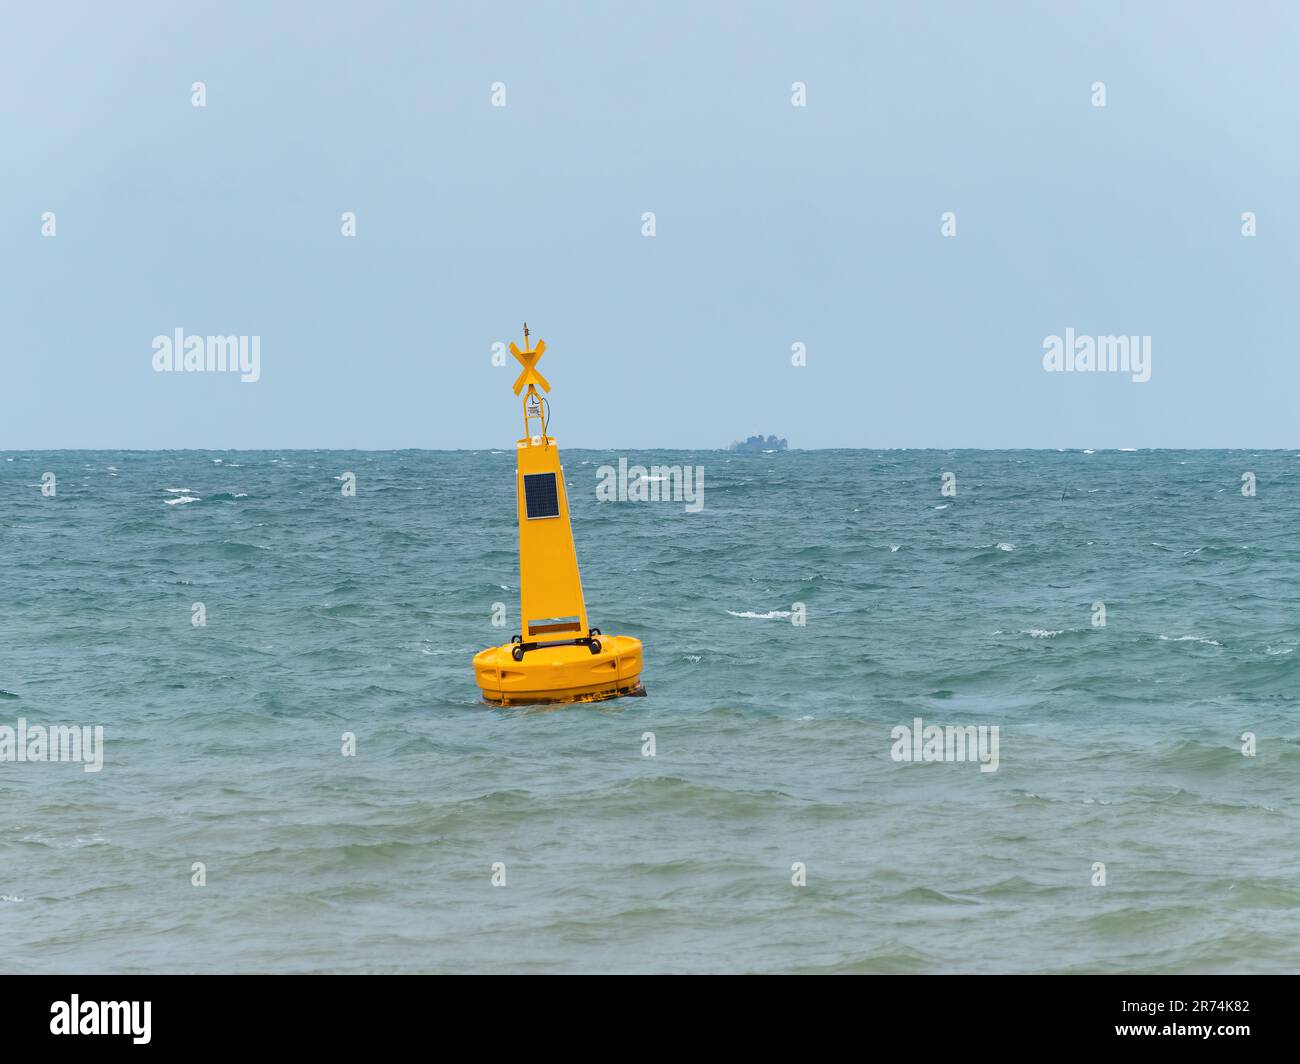 Boa gialla con luce solare in mare per segnalare un'area pericolosa, in questo caso un'area riservata ai nuotatori nei pressi di una spiaggia a Pattaya, Thailandia. Foto Stock